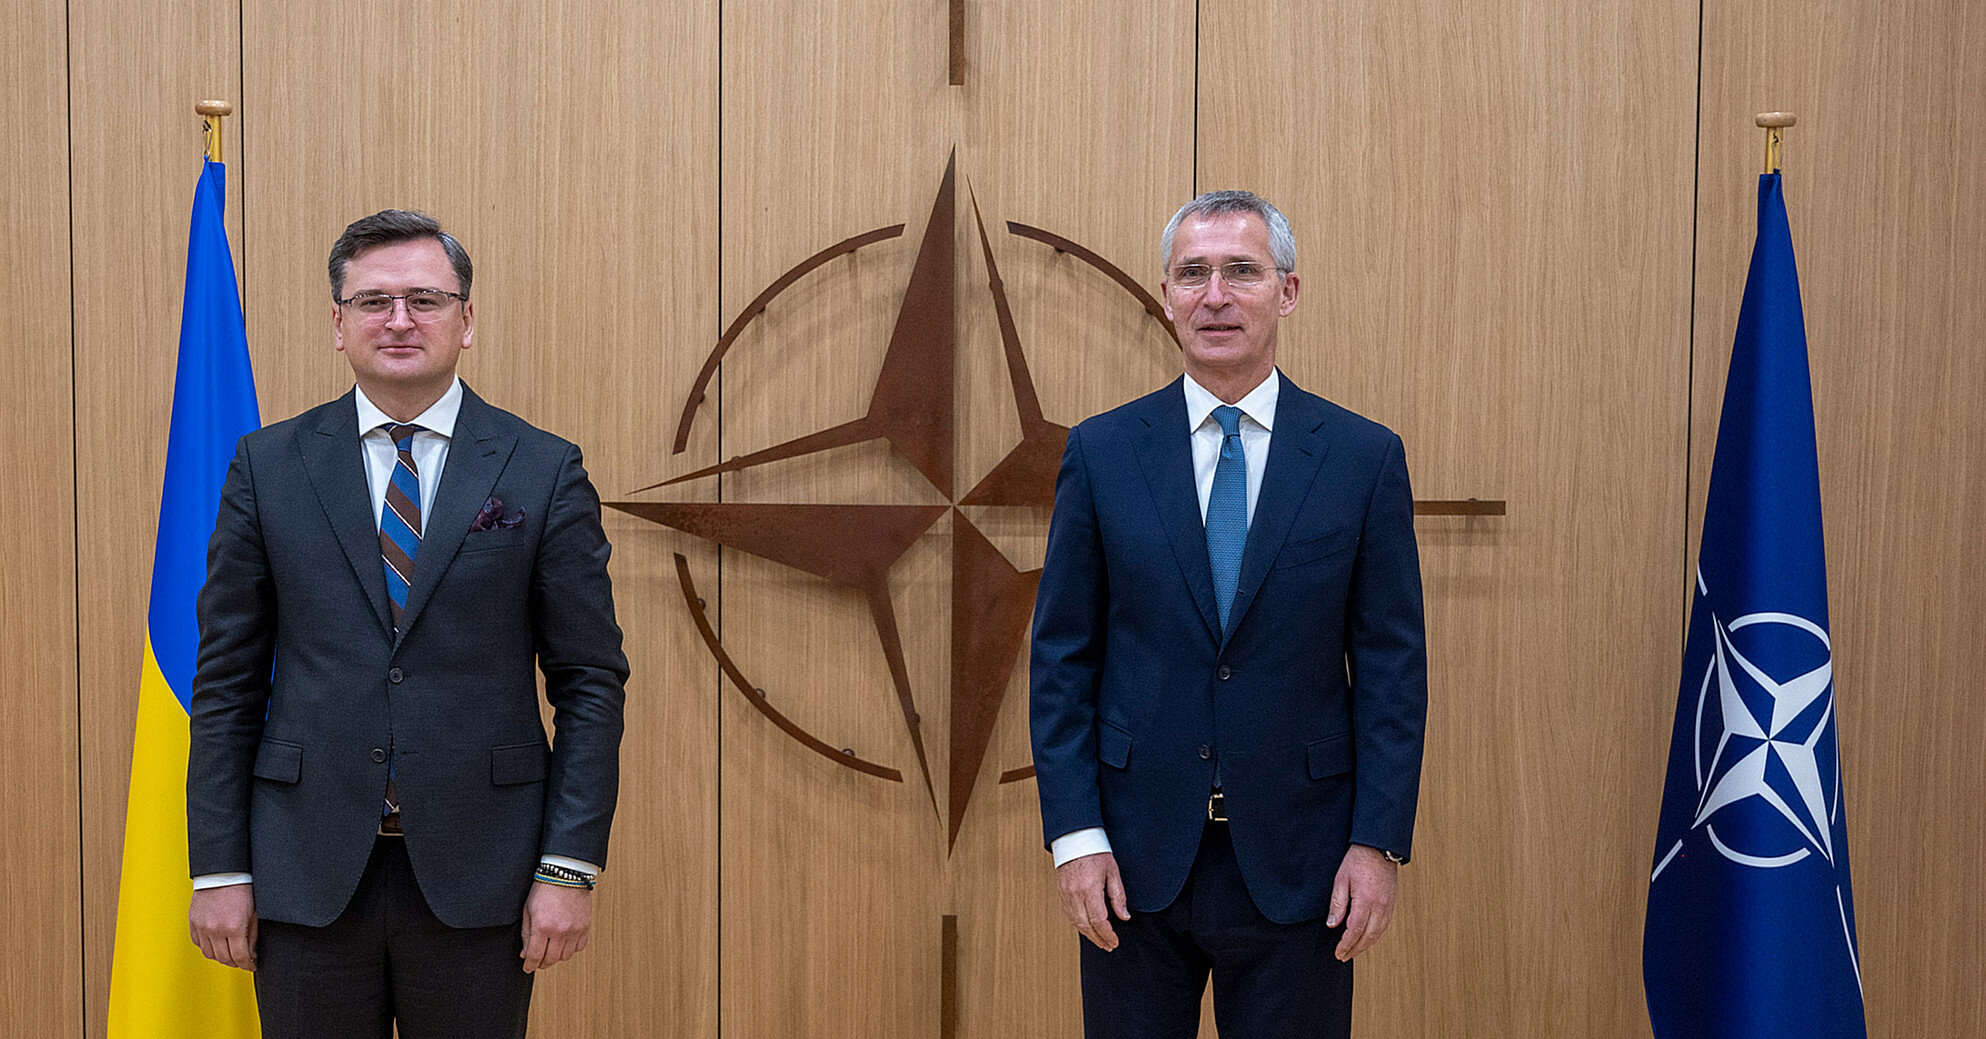 Кулеба обратился к НАТО: просит танки, ПВО и ускорить производство оружия